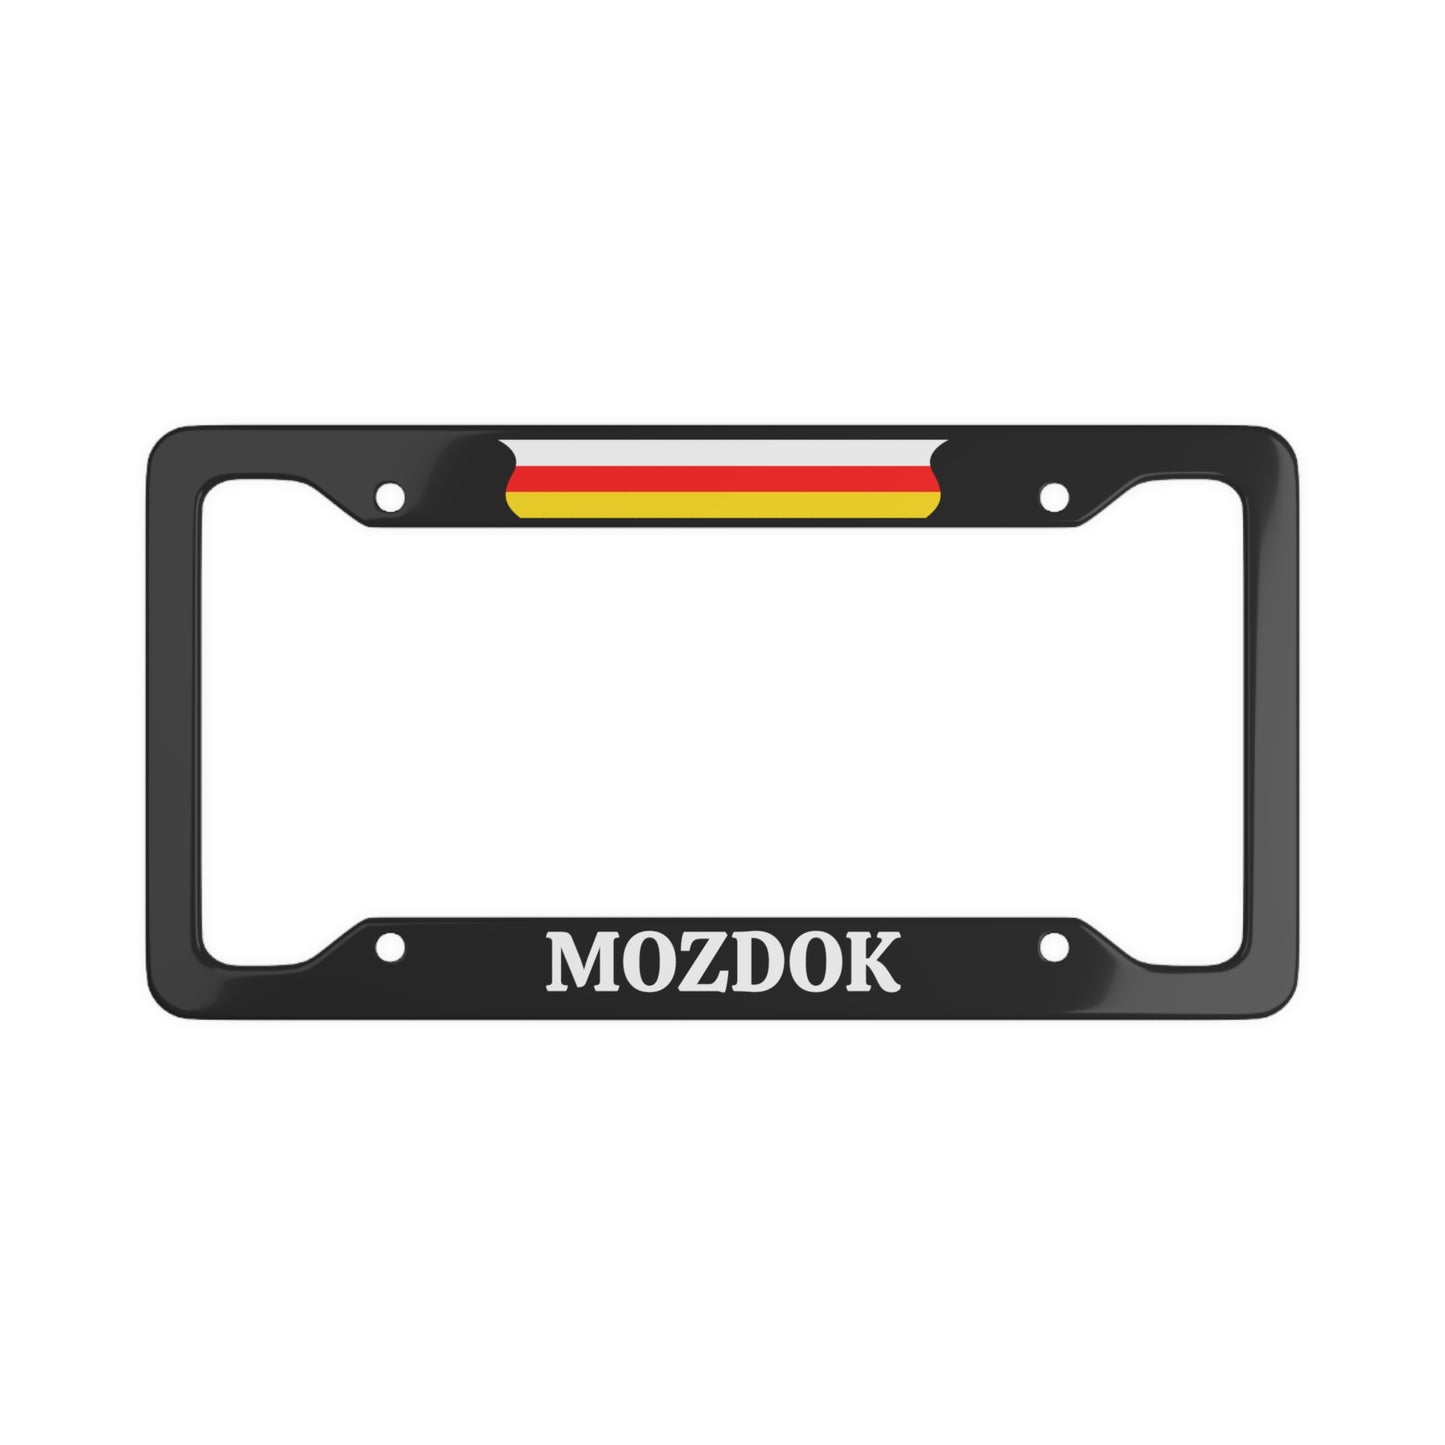 Mozdok Ossetia License Plate Frame